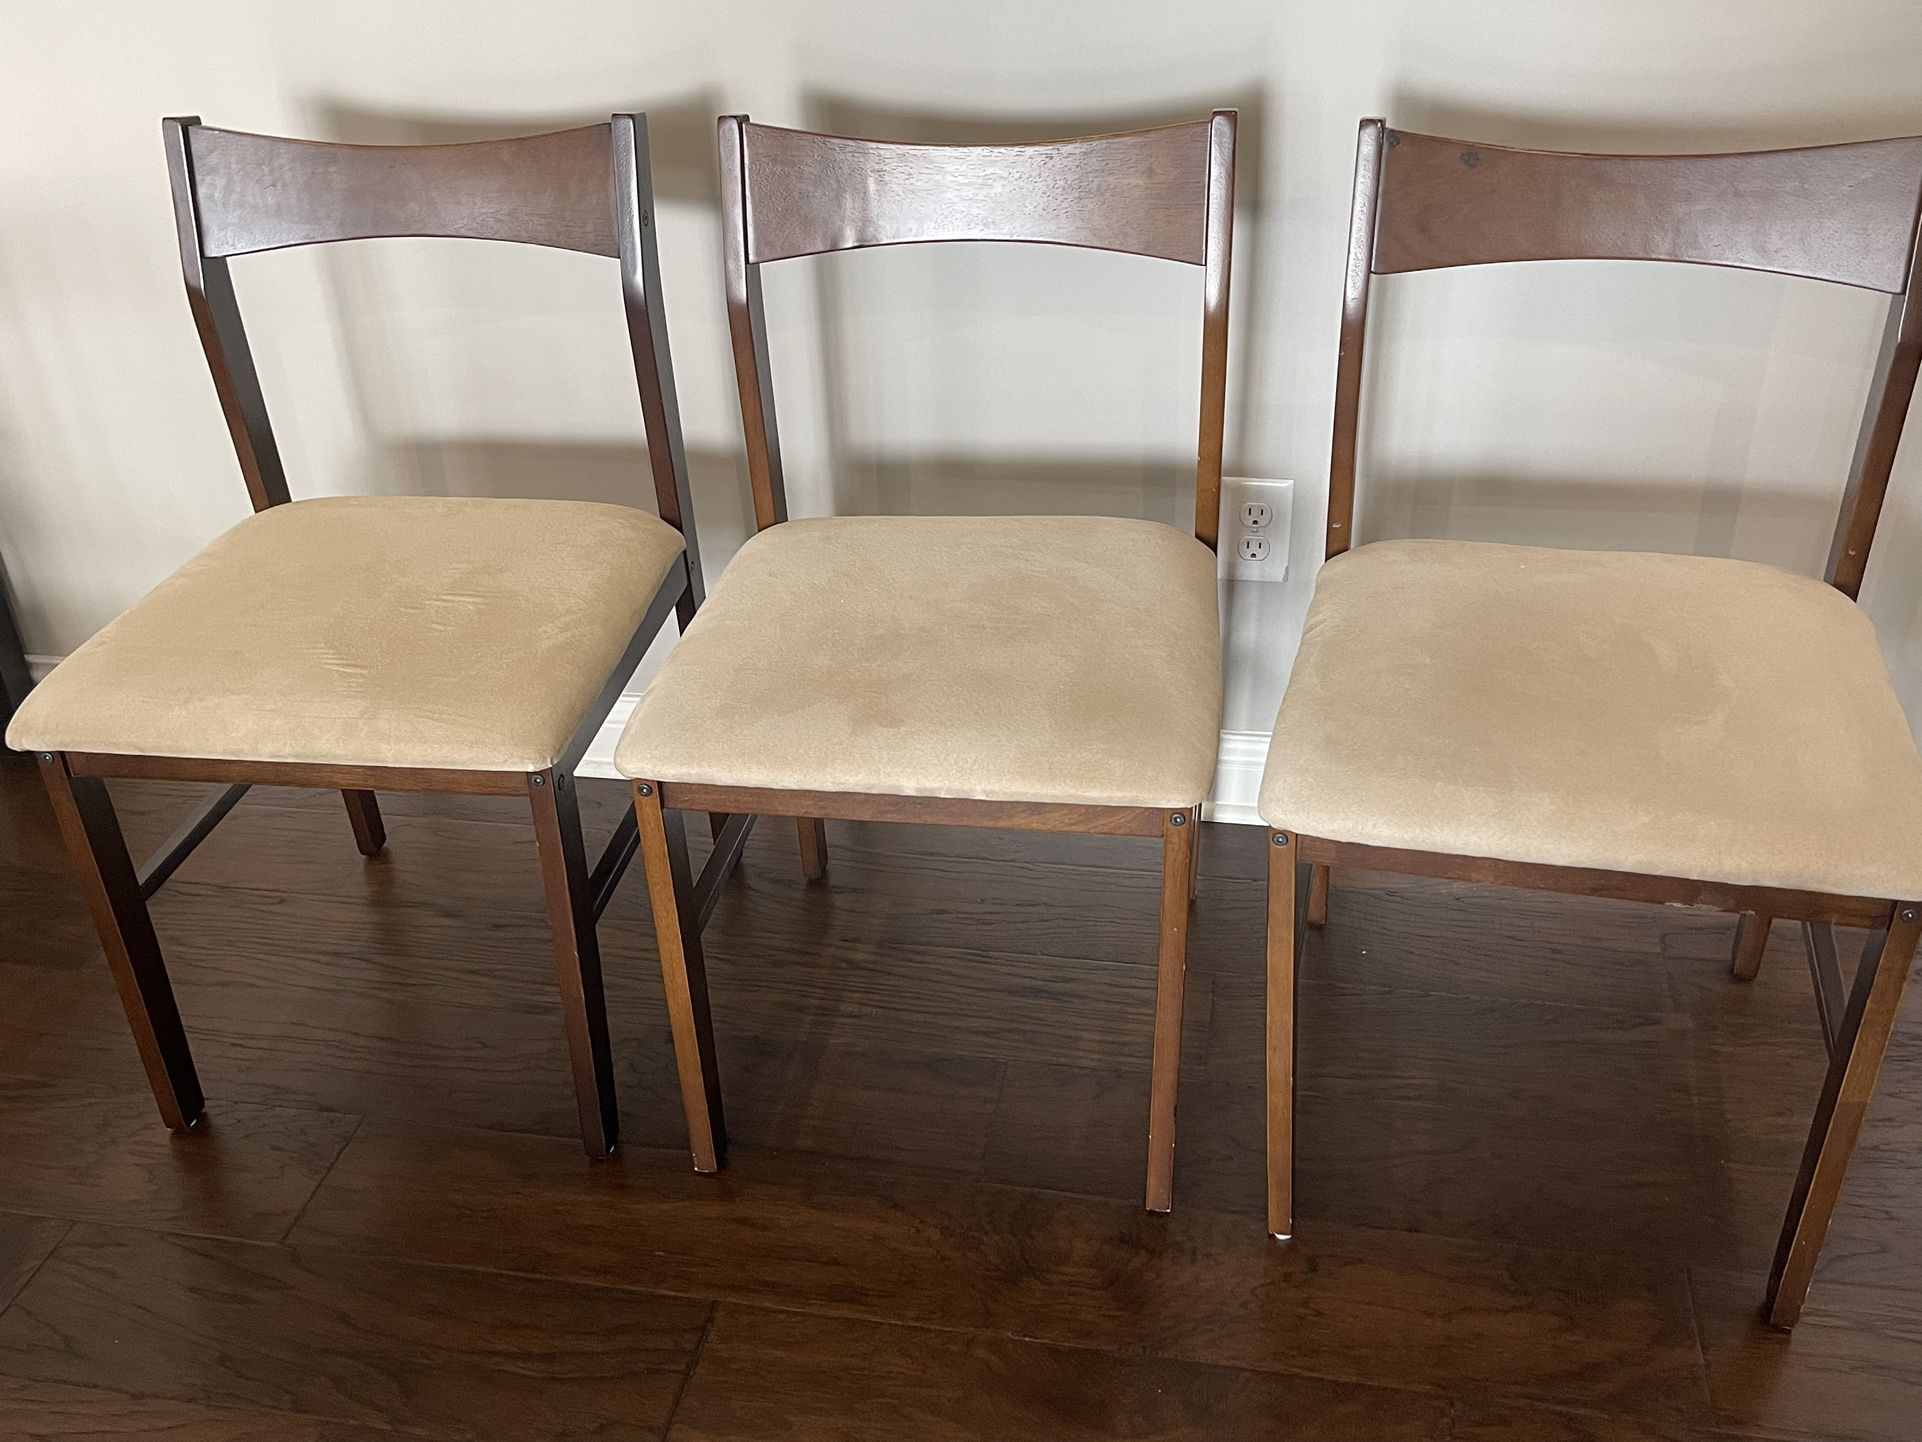 3 Nice Brown Chairs